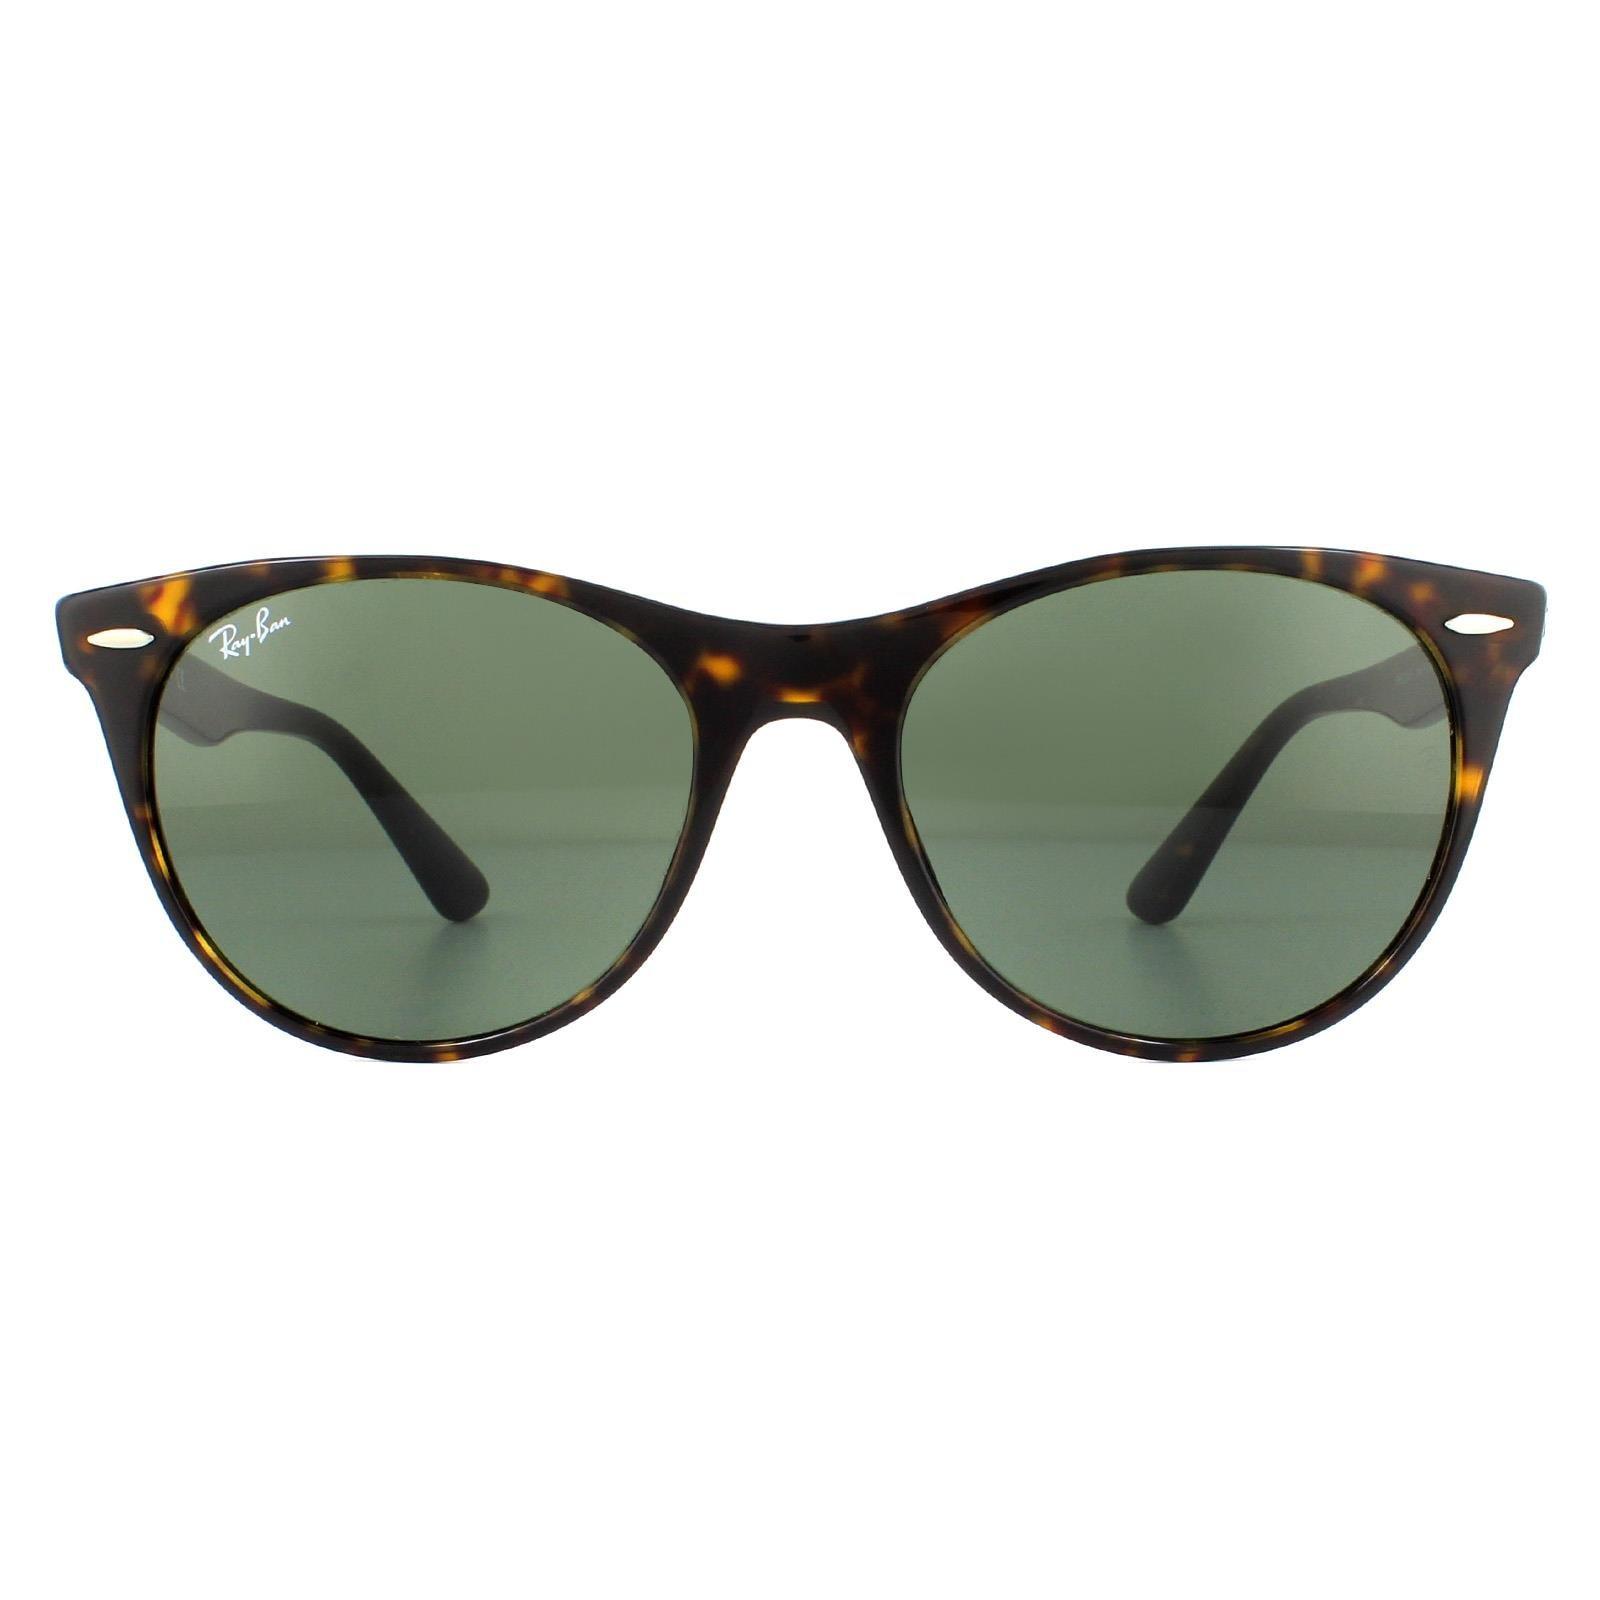 Круглые черепахово-зеленые классические солнцезащитные очки G-15 Ray-Ban, коричневый